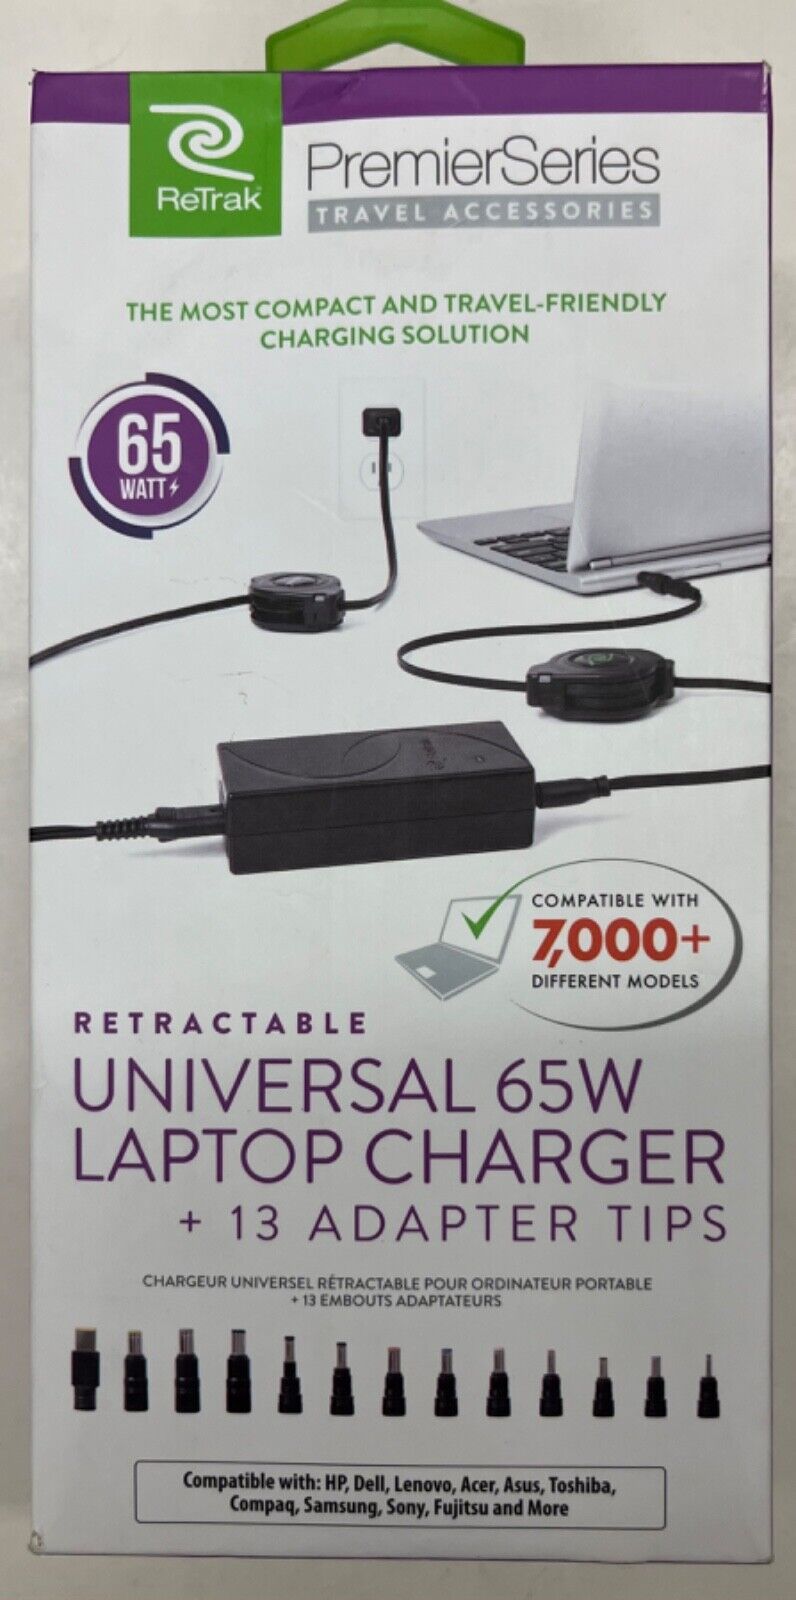 ReTrak Premier Series Retractable Universal 65W Laptop Charger w/13 Tips